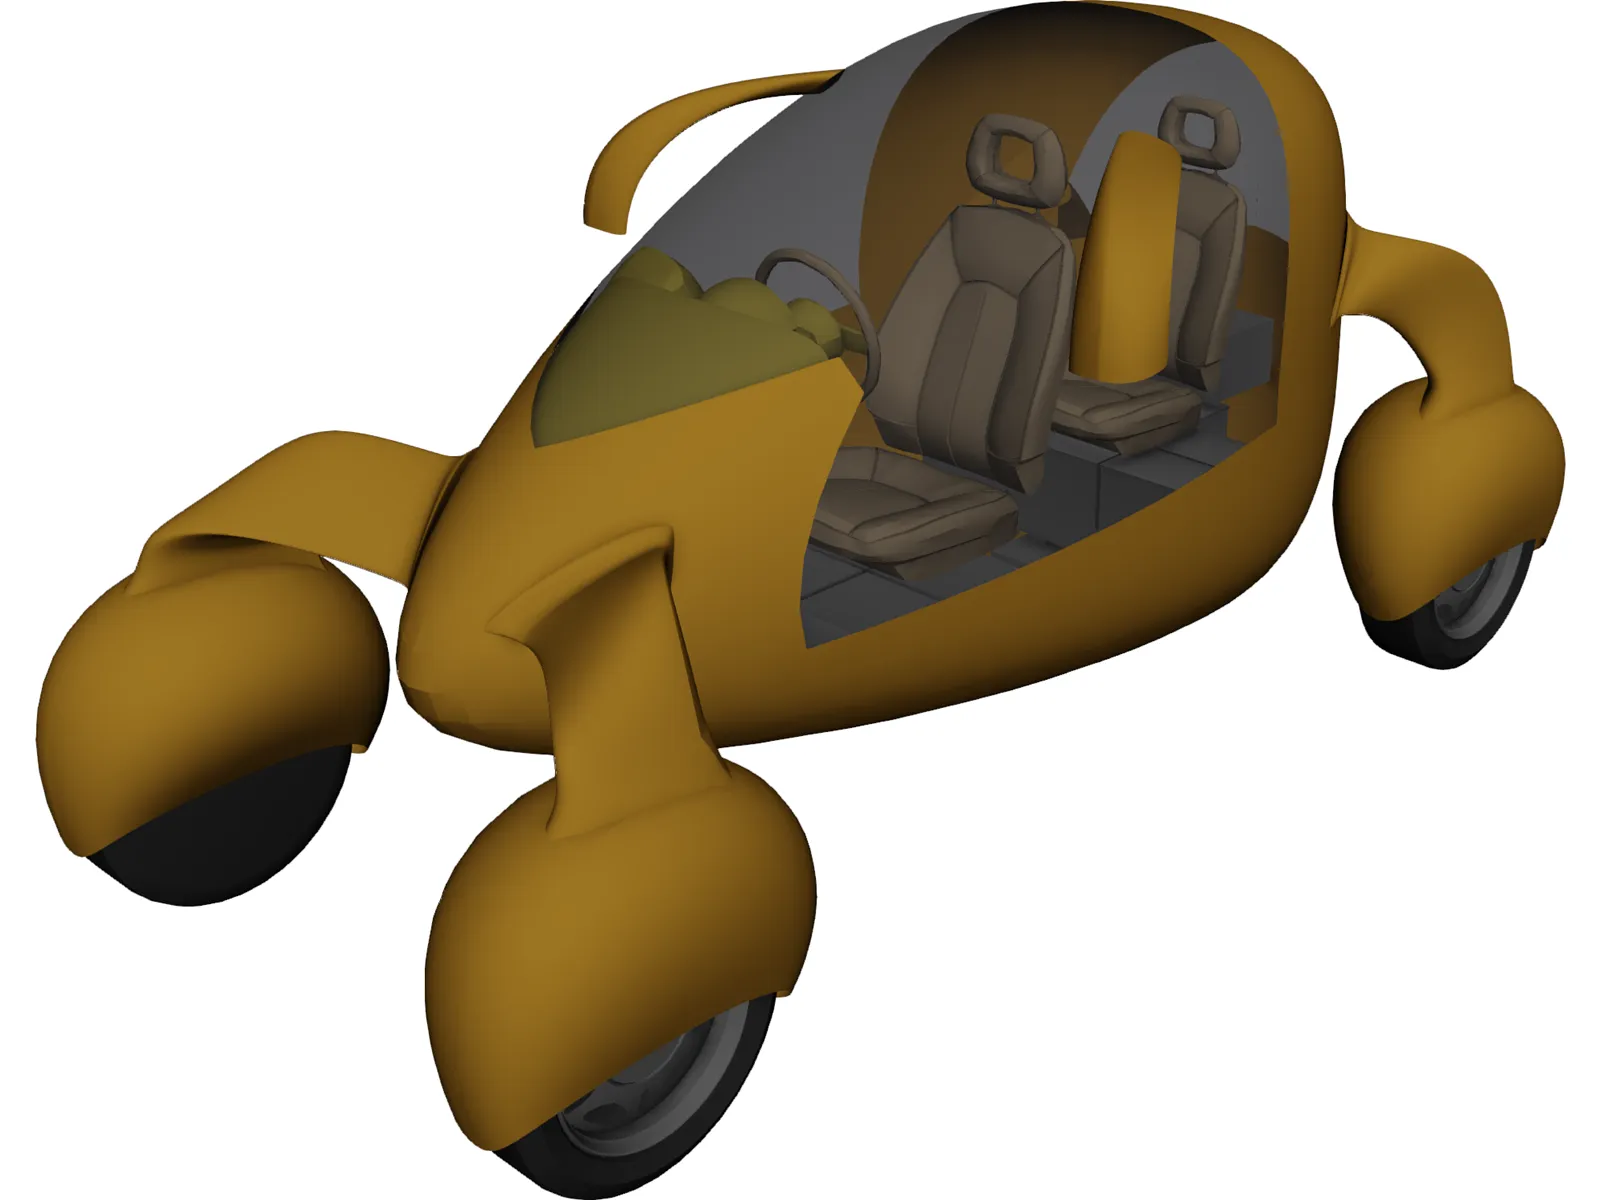 Electric Bubble Car 3D Model